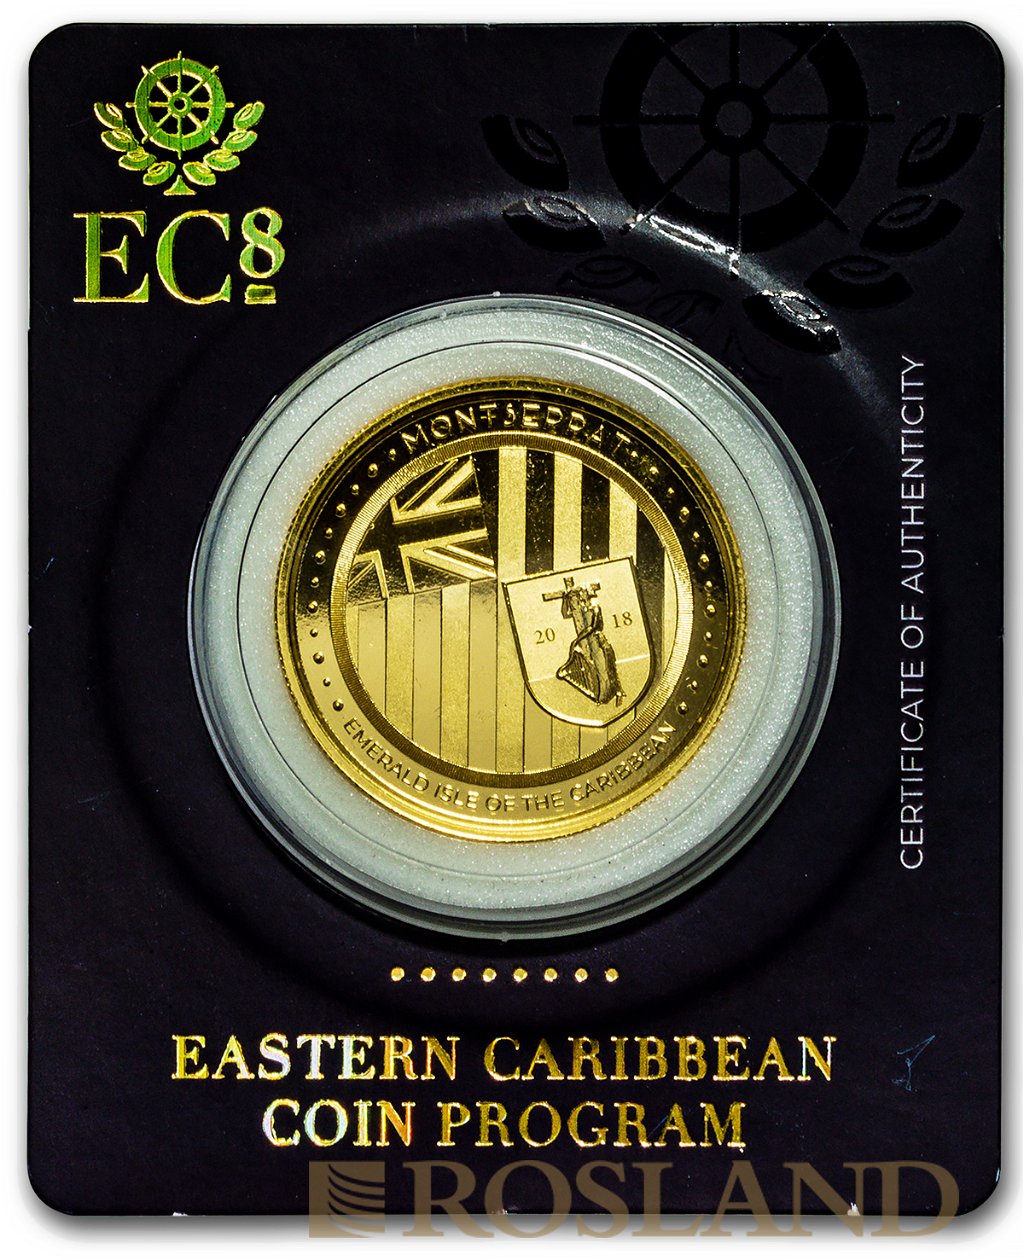 1 Unze Goldmünze EC8 Montserrat Emerald Isle of the Caribbean 2018 (Blister, Zertifikat)